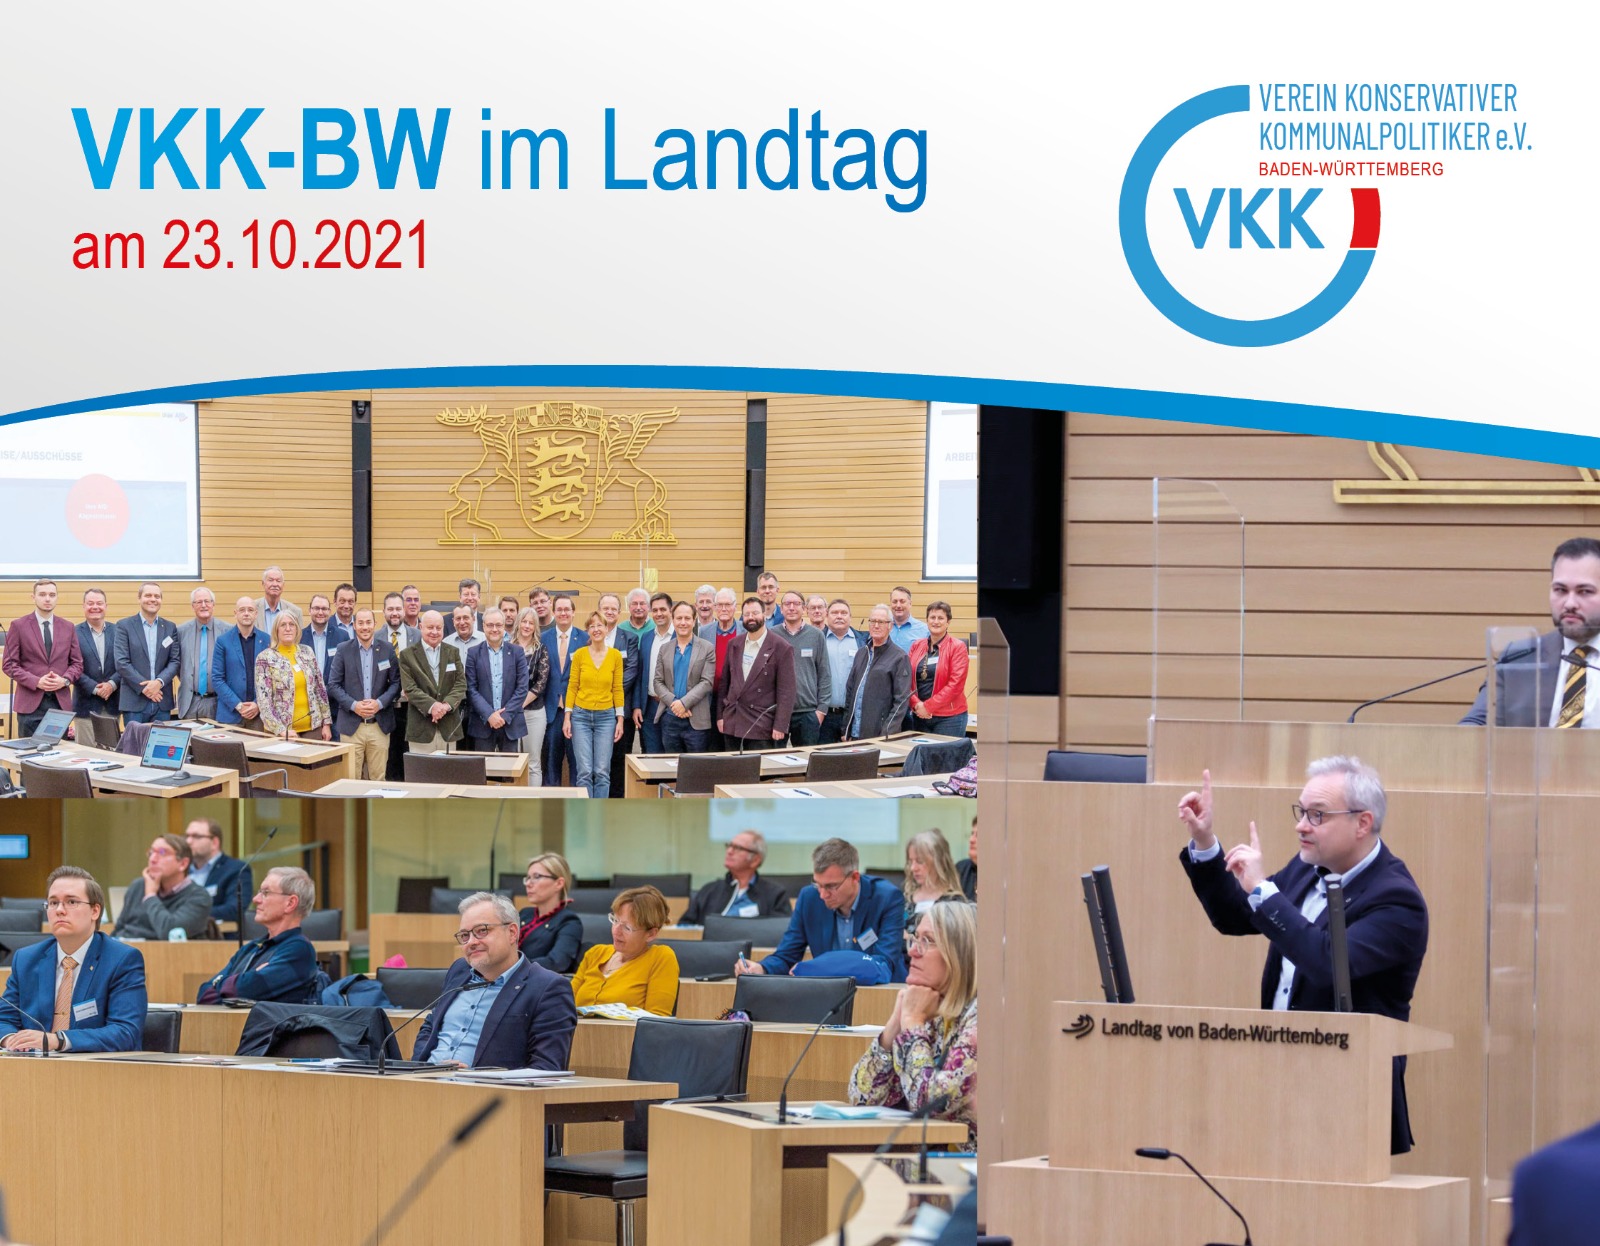 VKK-BW Landtag